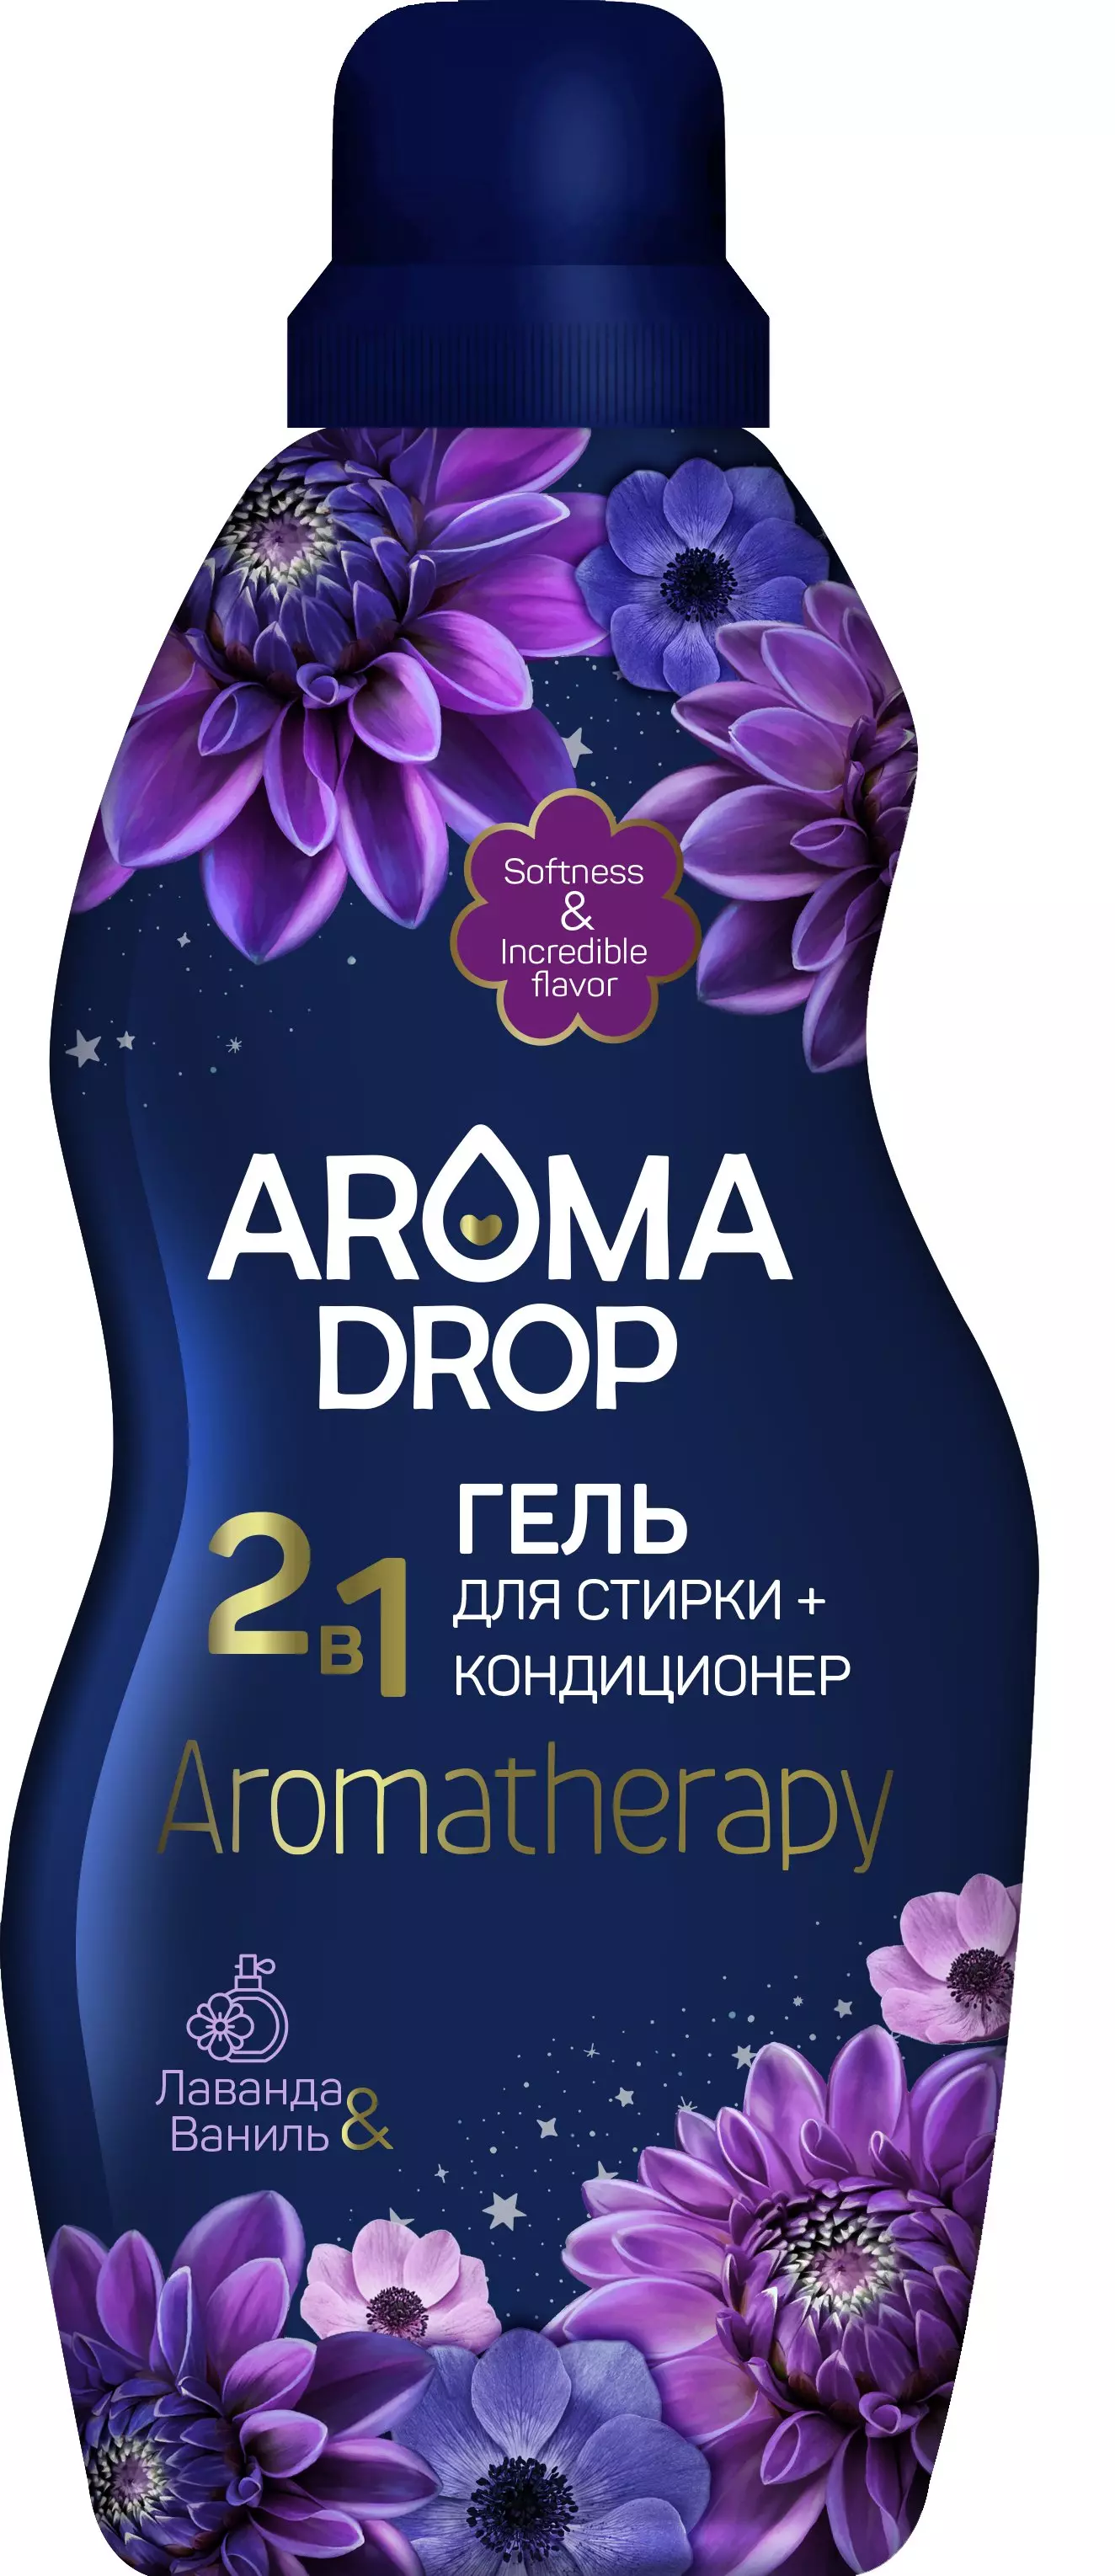 Гель для стирки Aroma Drop Aromatherapy 2 в 1 Лаванда и ваниль, 1 л